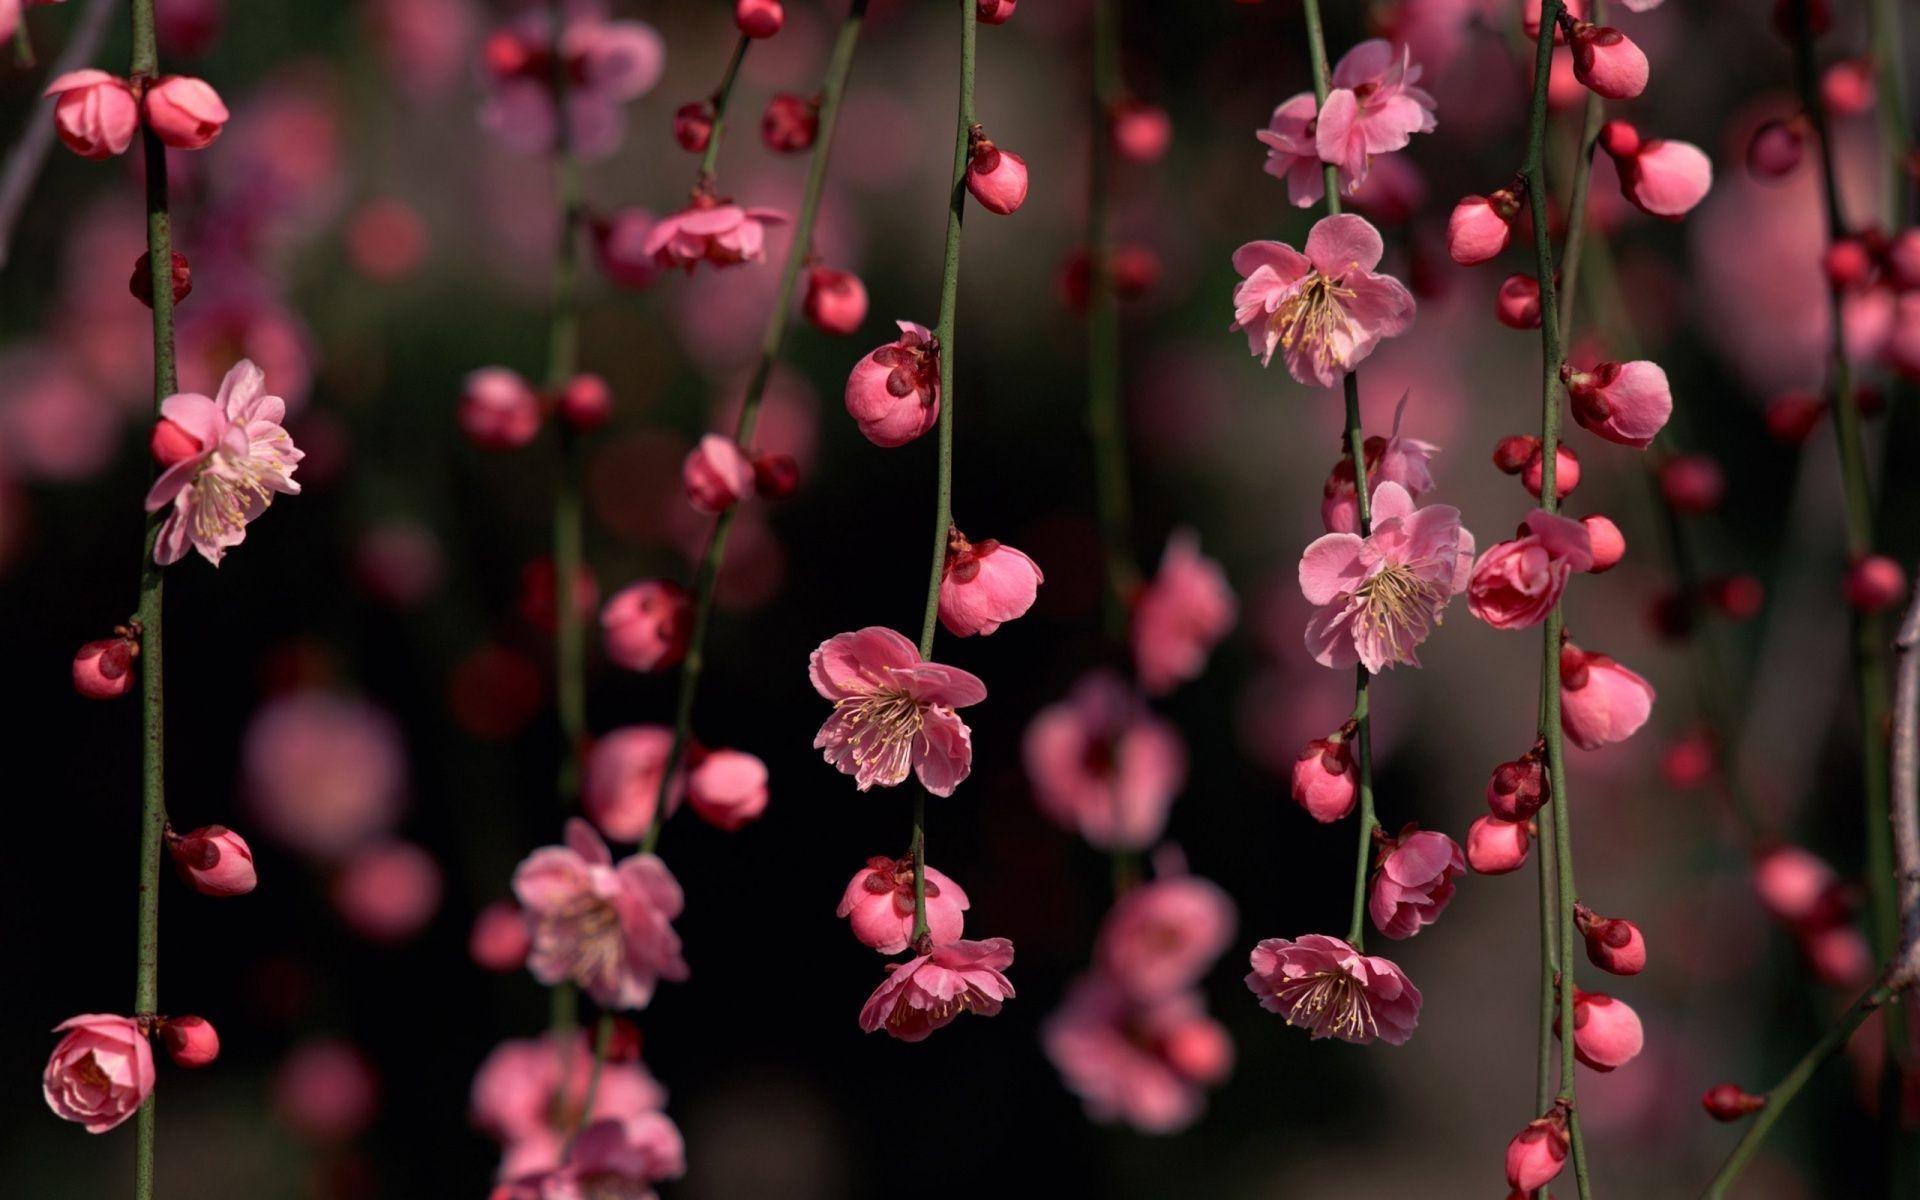 V.11: Pink Flower Wallpaper, HD Image of Pink Flower, Ultra HD 4K